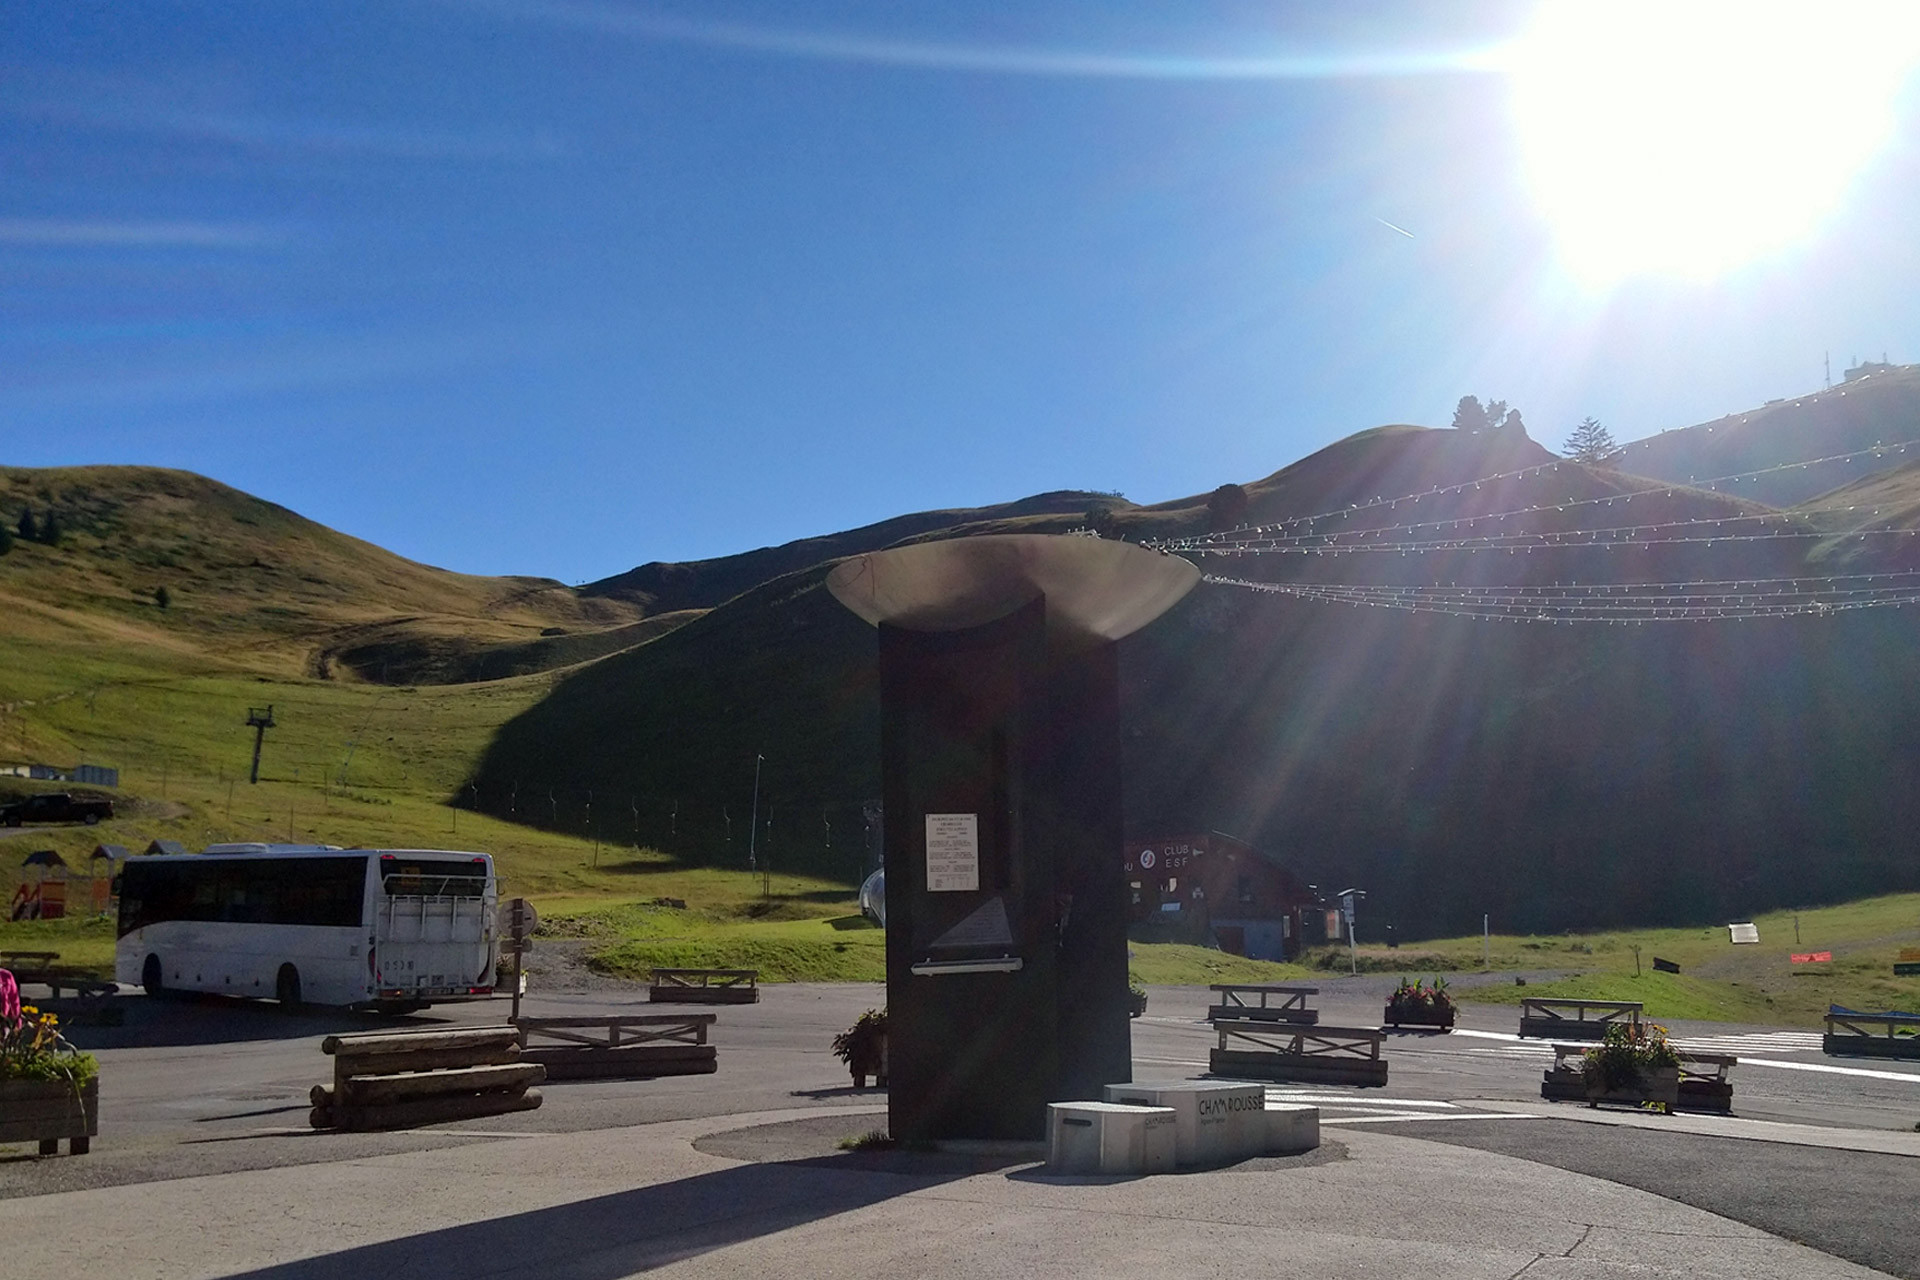 Chamrousse bus été recoin station montagne grenoble belledonne isere alpes france